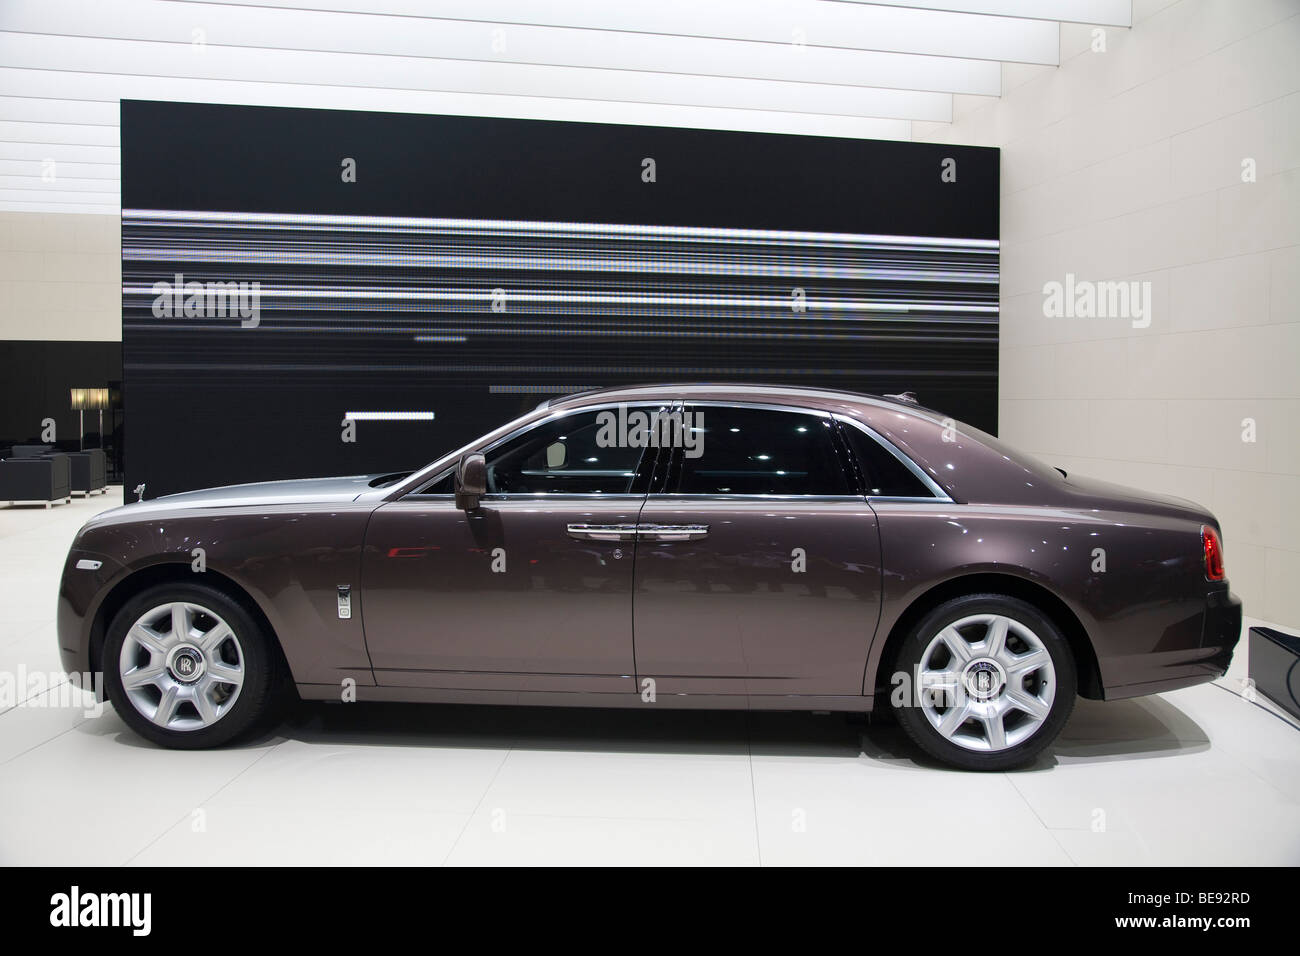 Rolls Royce Ghost premier ministre lors d'une salon de l'automobile européenne Banque D'Images